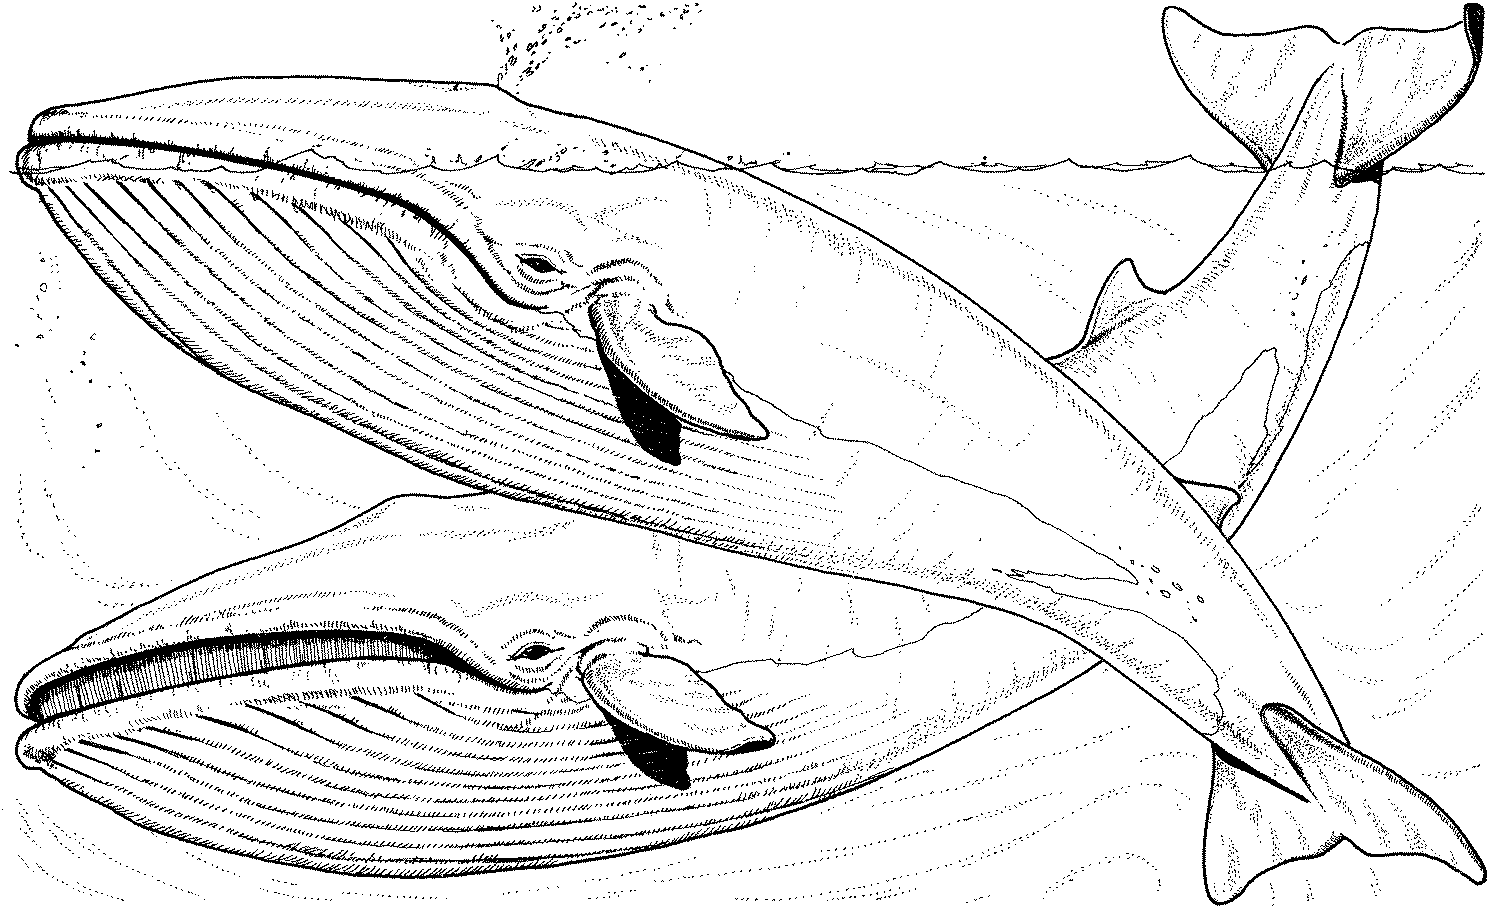 Dessin de baleine pour imprimer et colorier